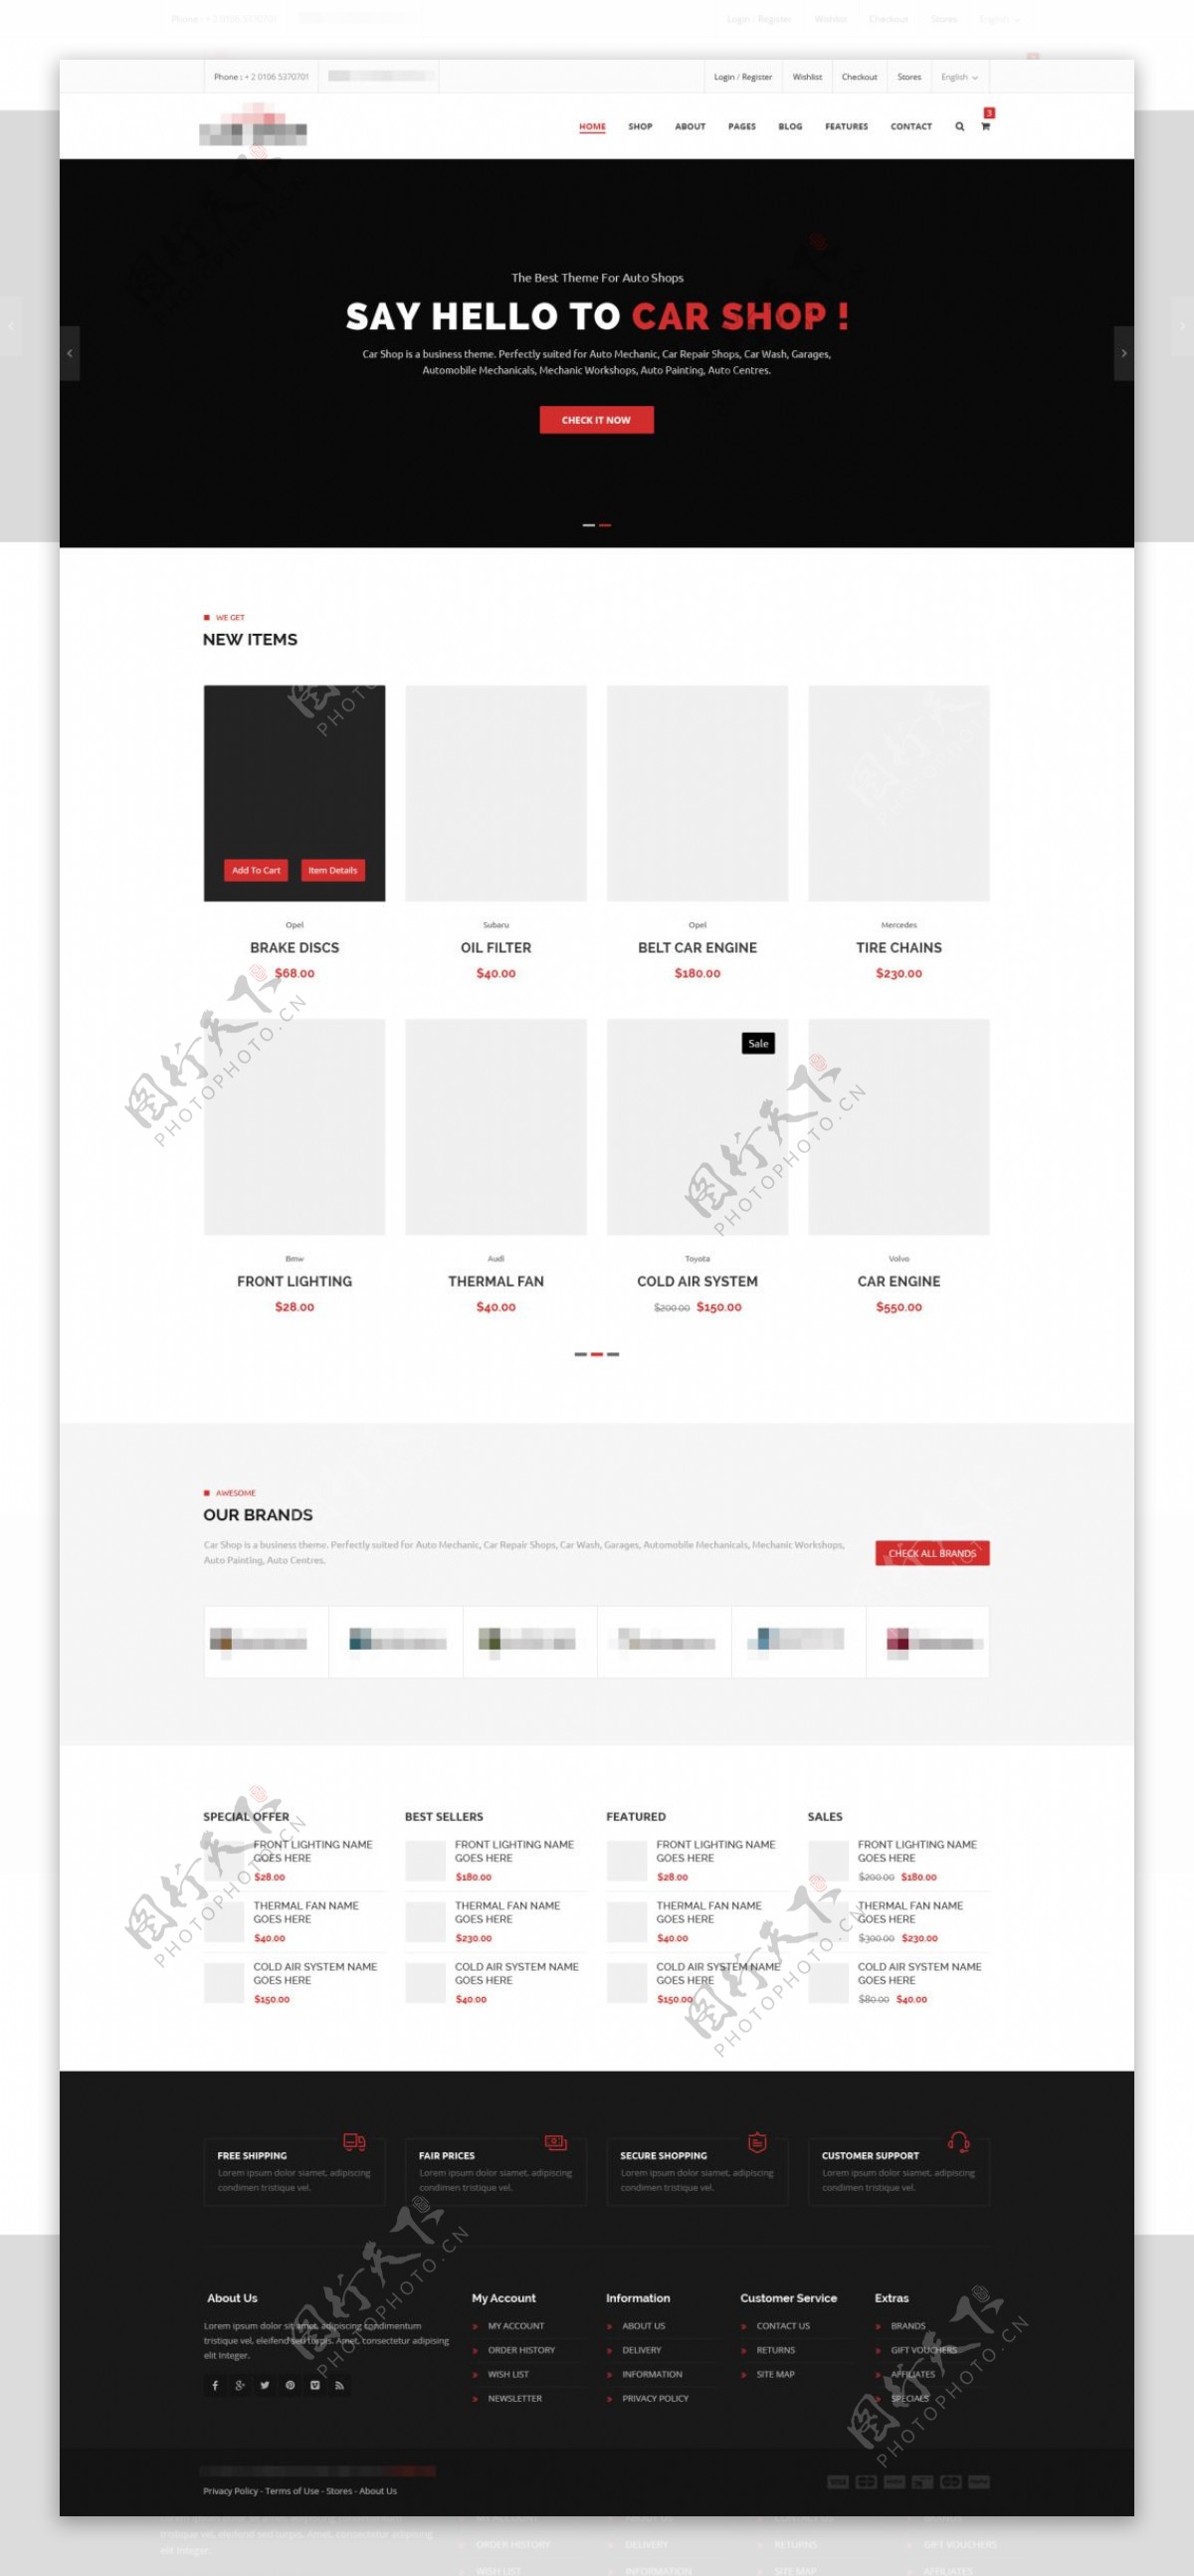 简洁的企业电子购物商城网站模板设计首页